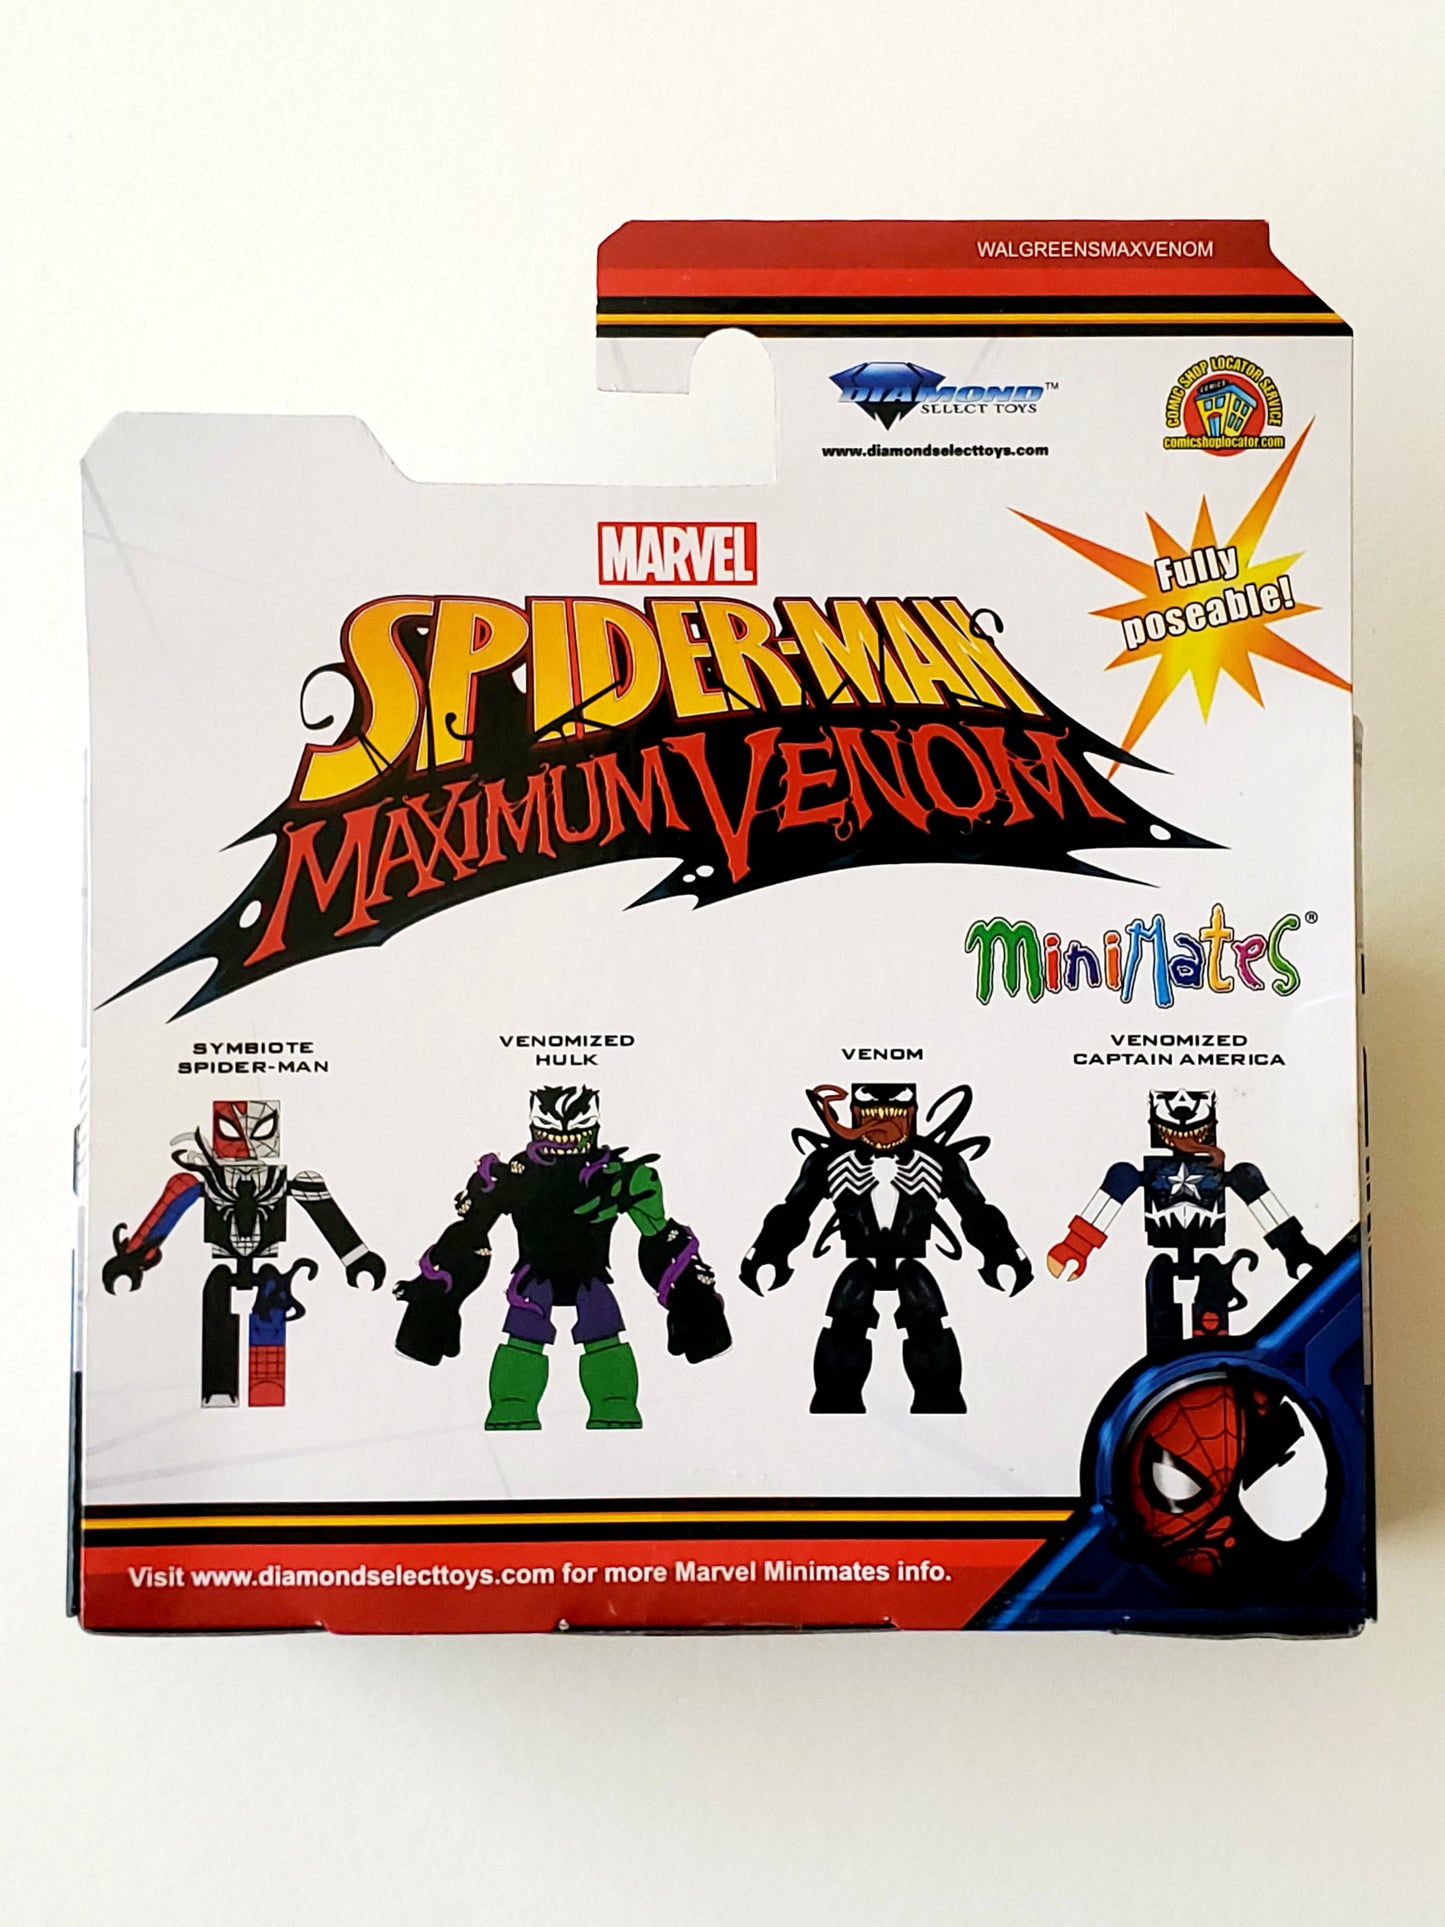 Spider-Man Maximum Venom Minimates Exclusive Venom & Venomized Captain America Action Figures